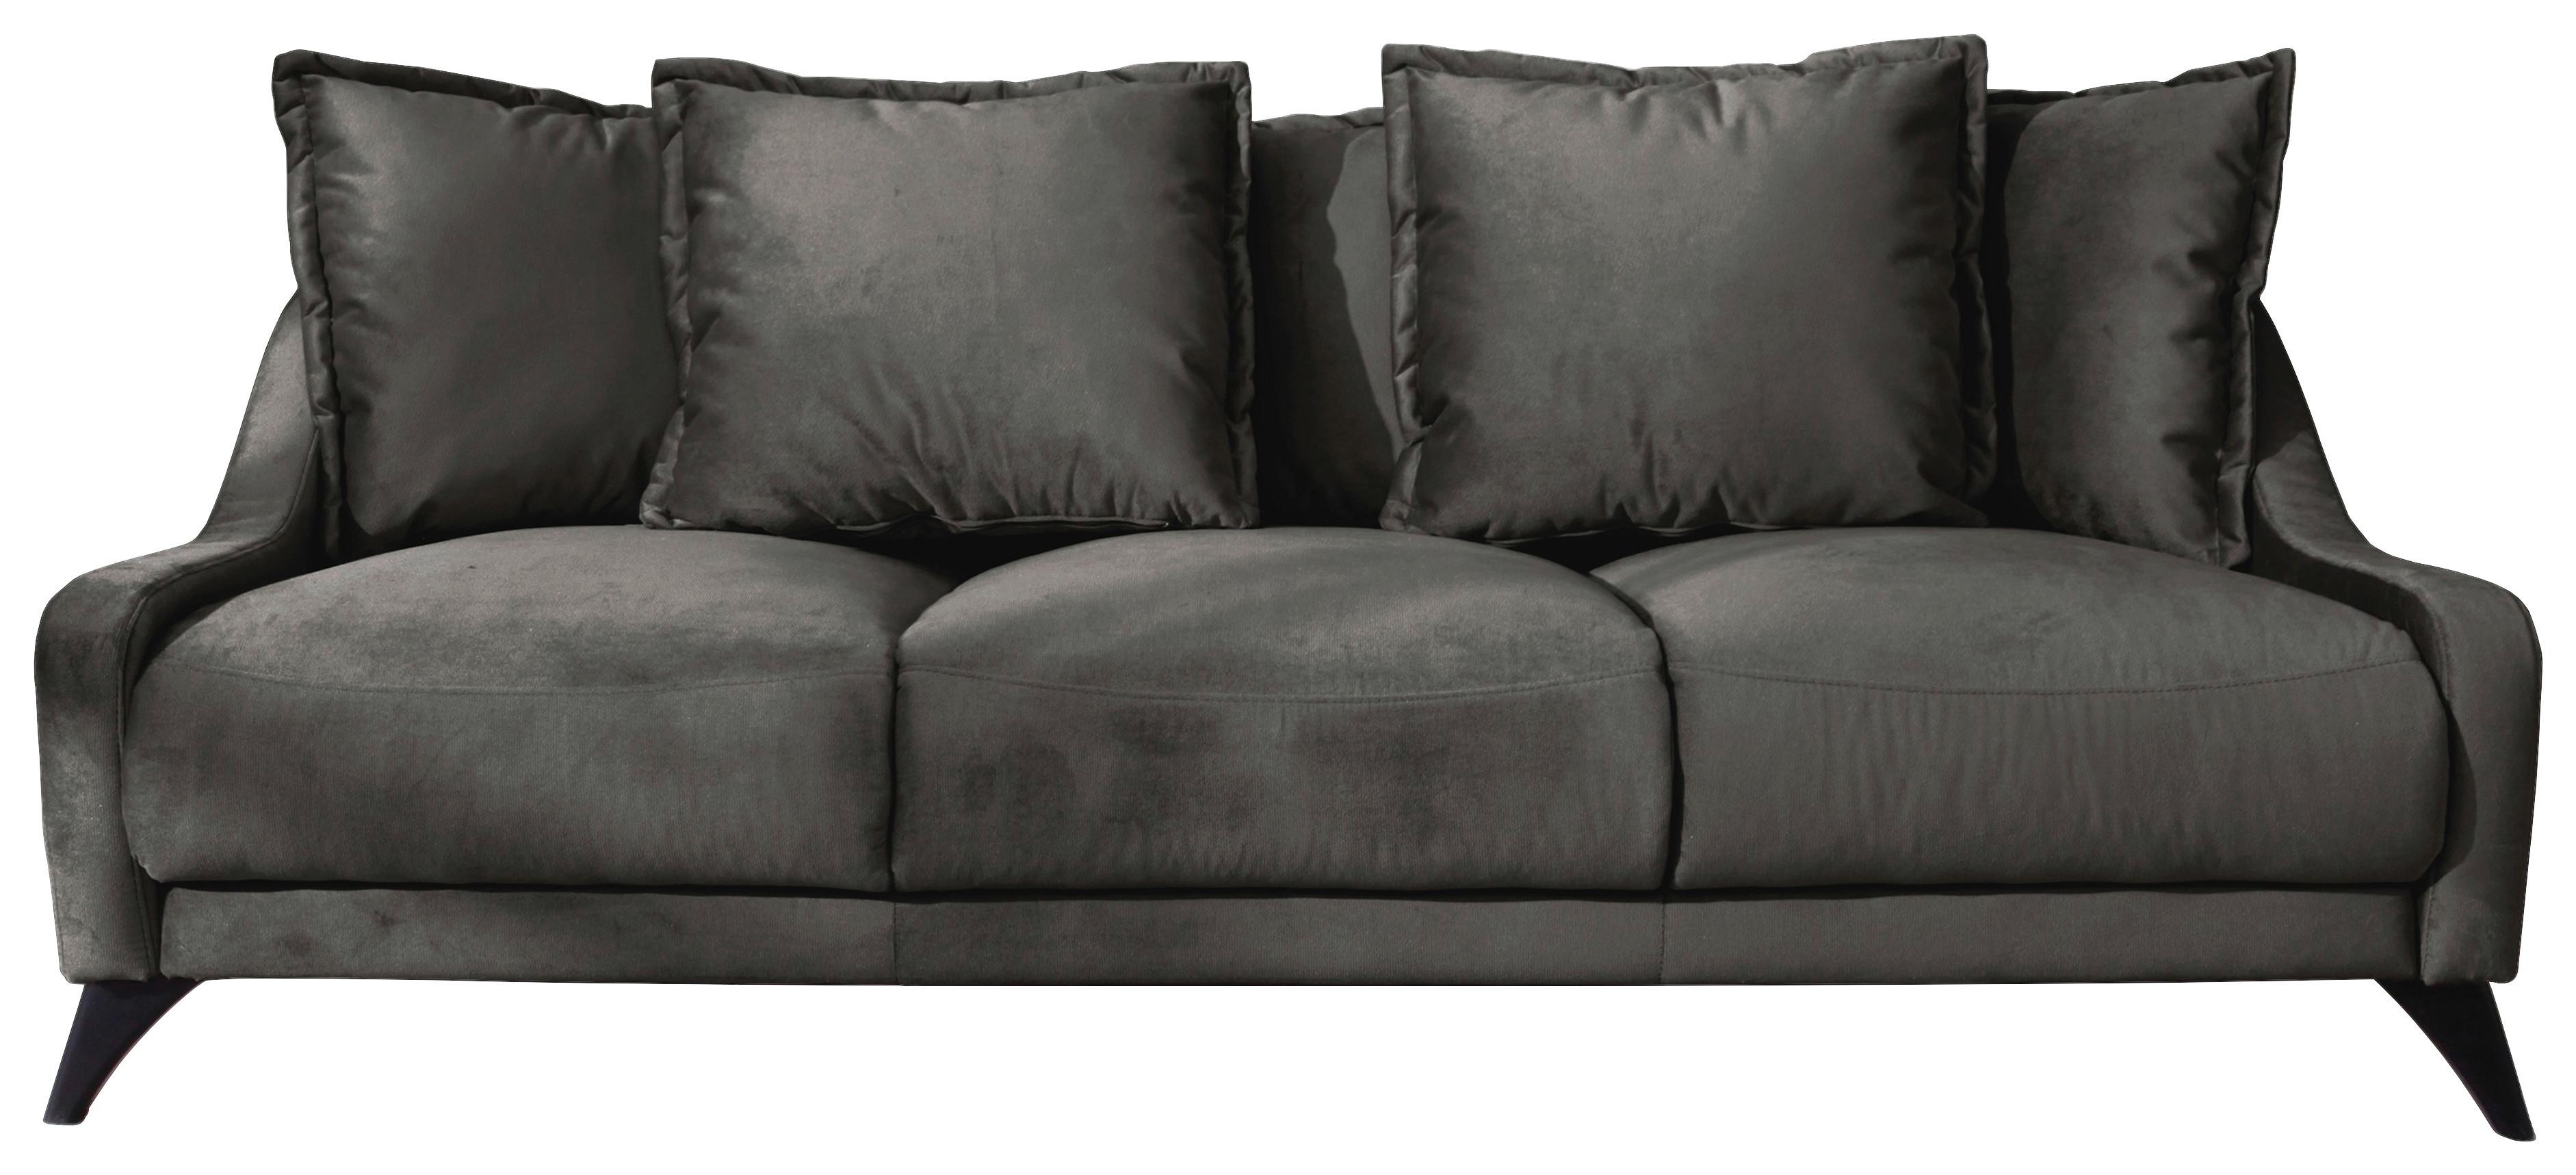 Dreisitzer-Sofa mit Kissen Royal Rose, Veloursbezug - Dunkelgrau/Schwarz, Basics, Textil (200/90/95cm) - MID.YOU